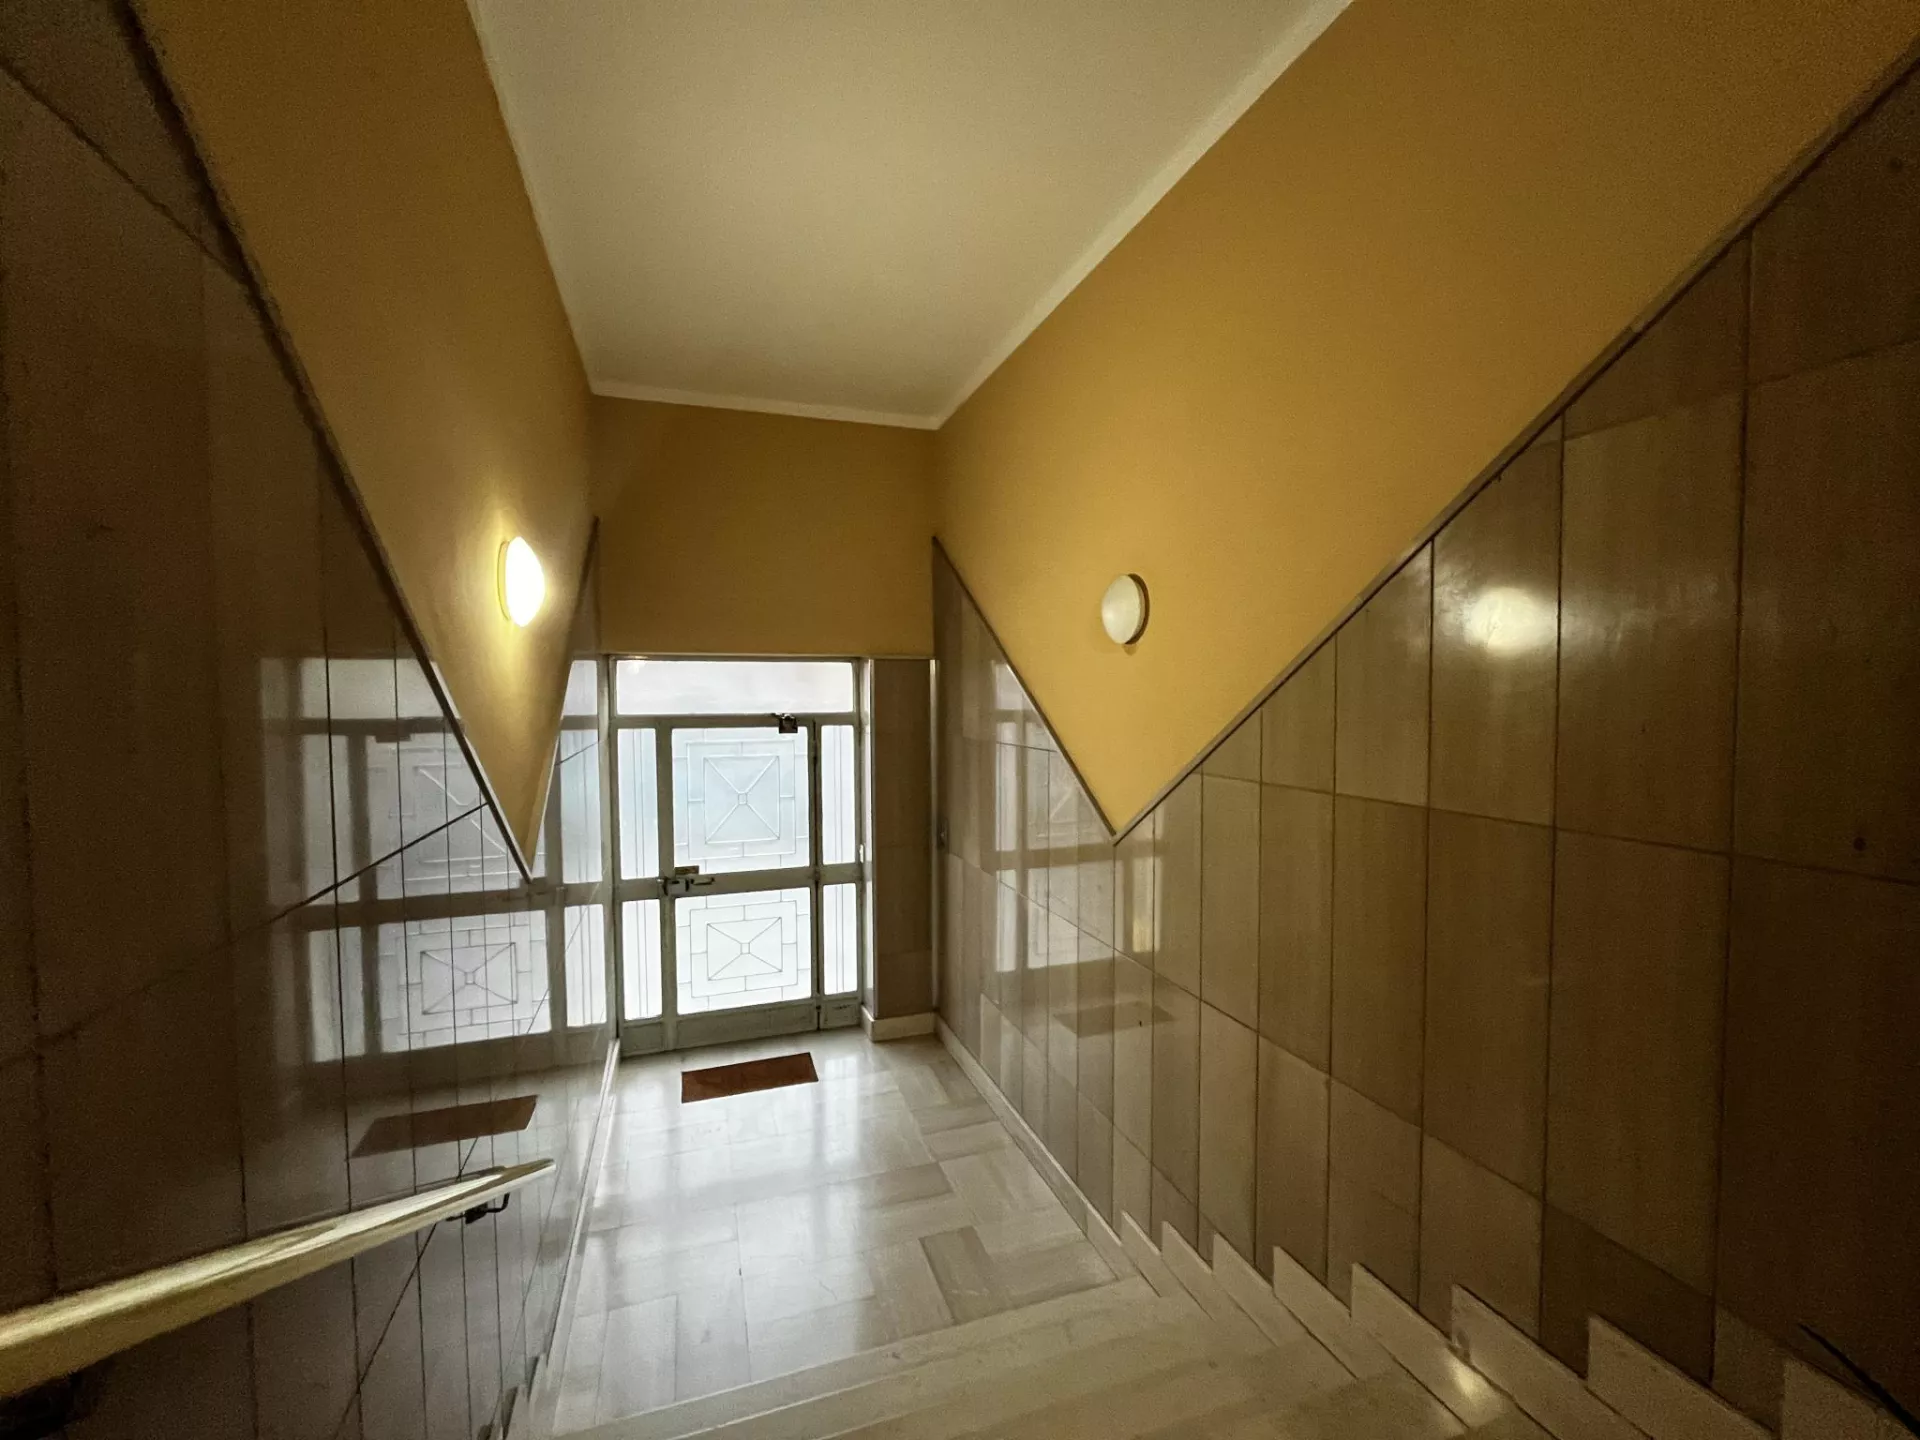 Immagine per Appartamento in affitto a Saluzzo corso Piemonte 78